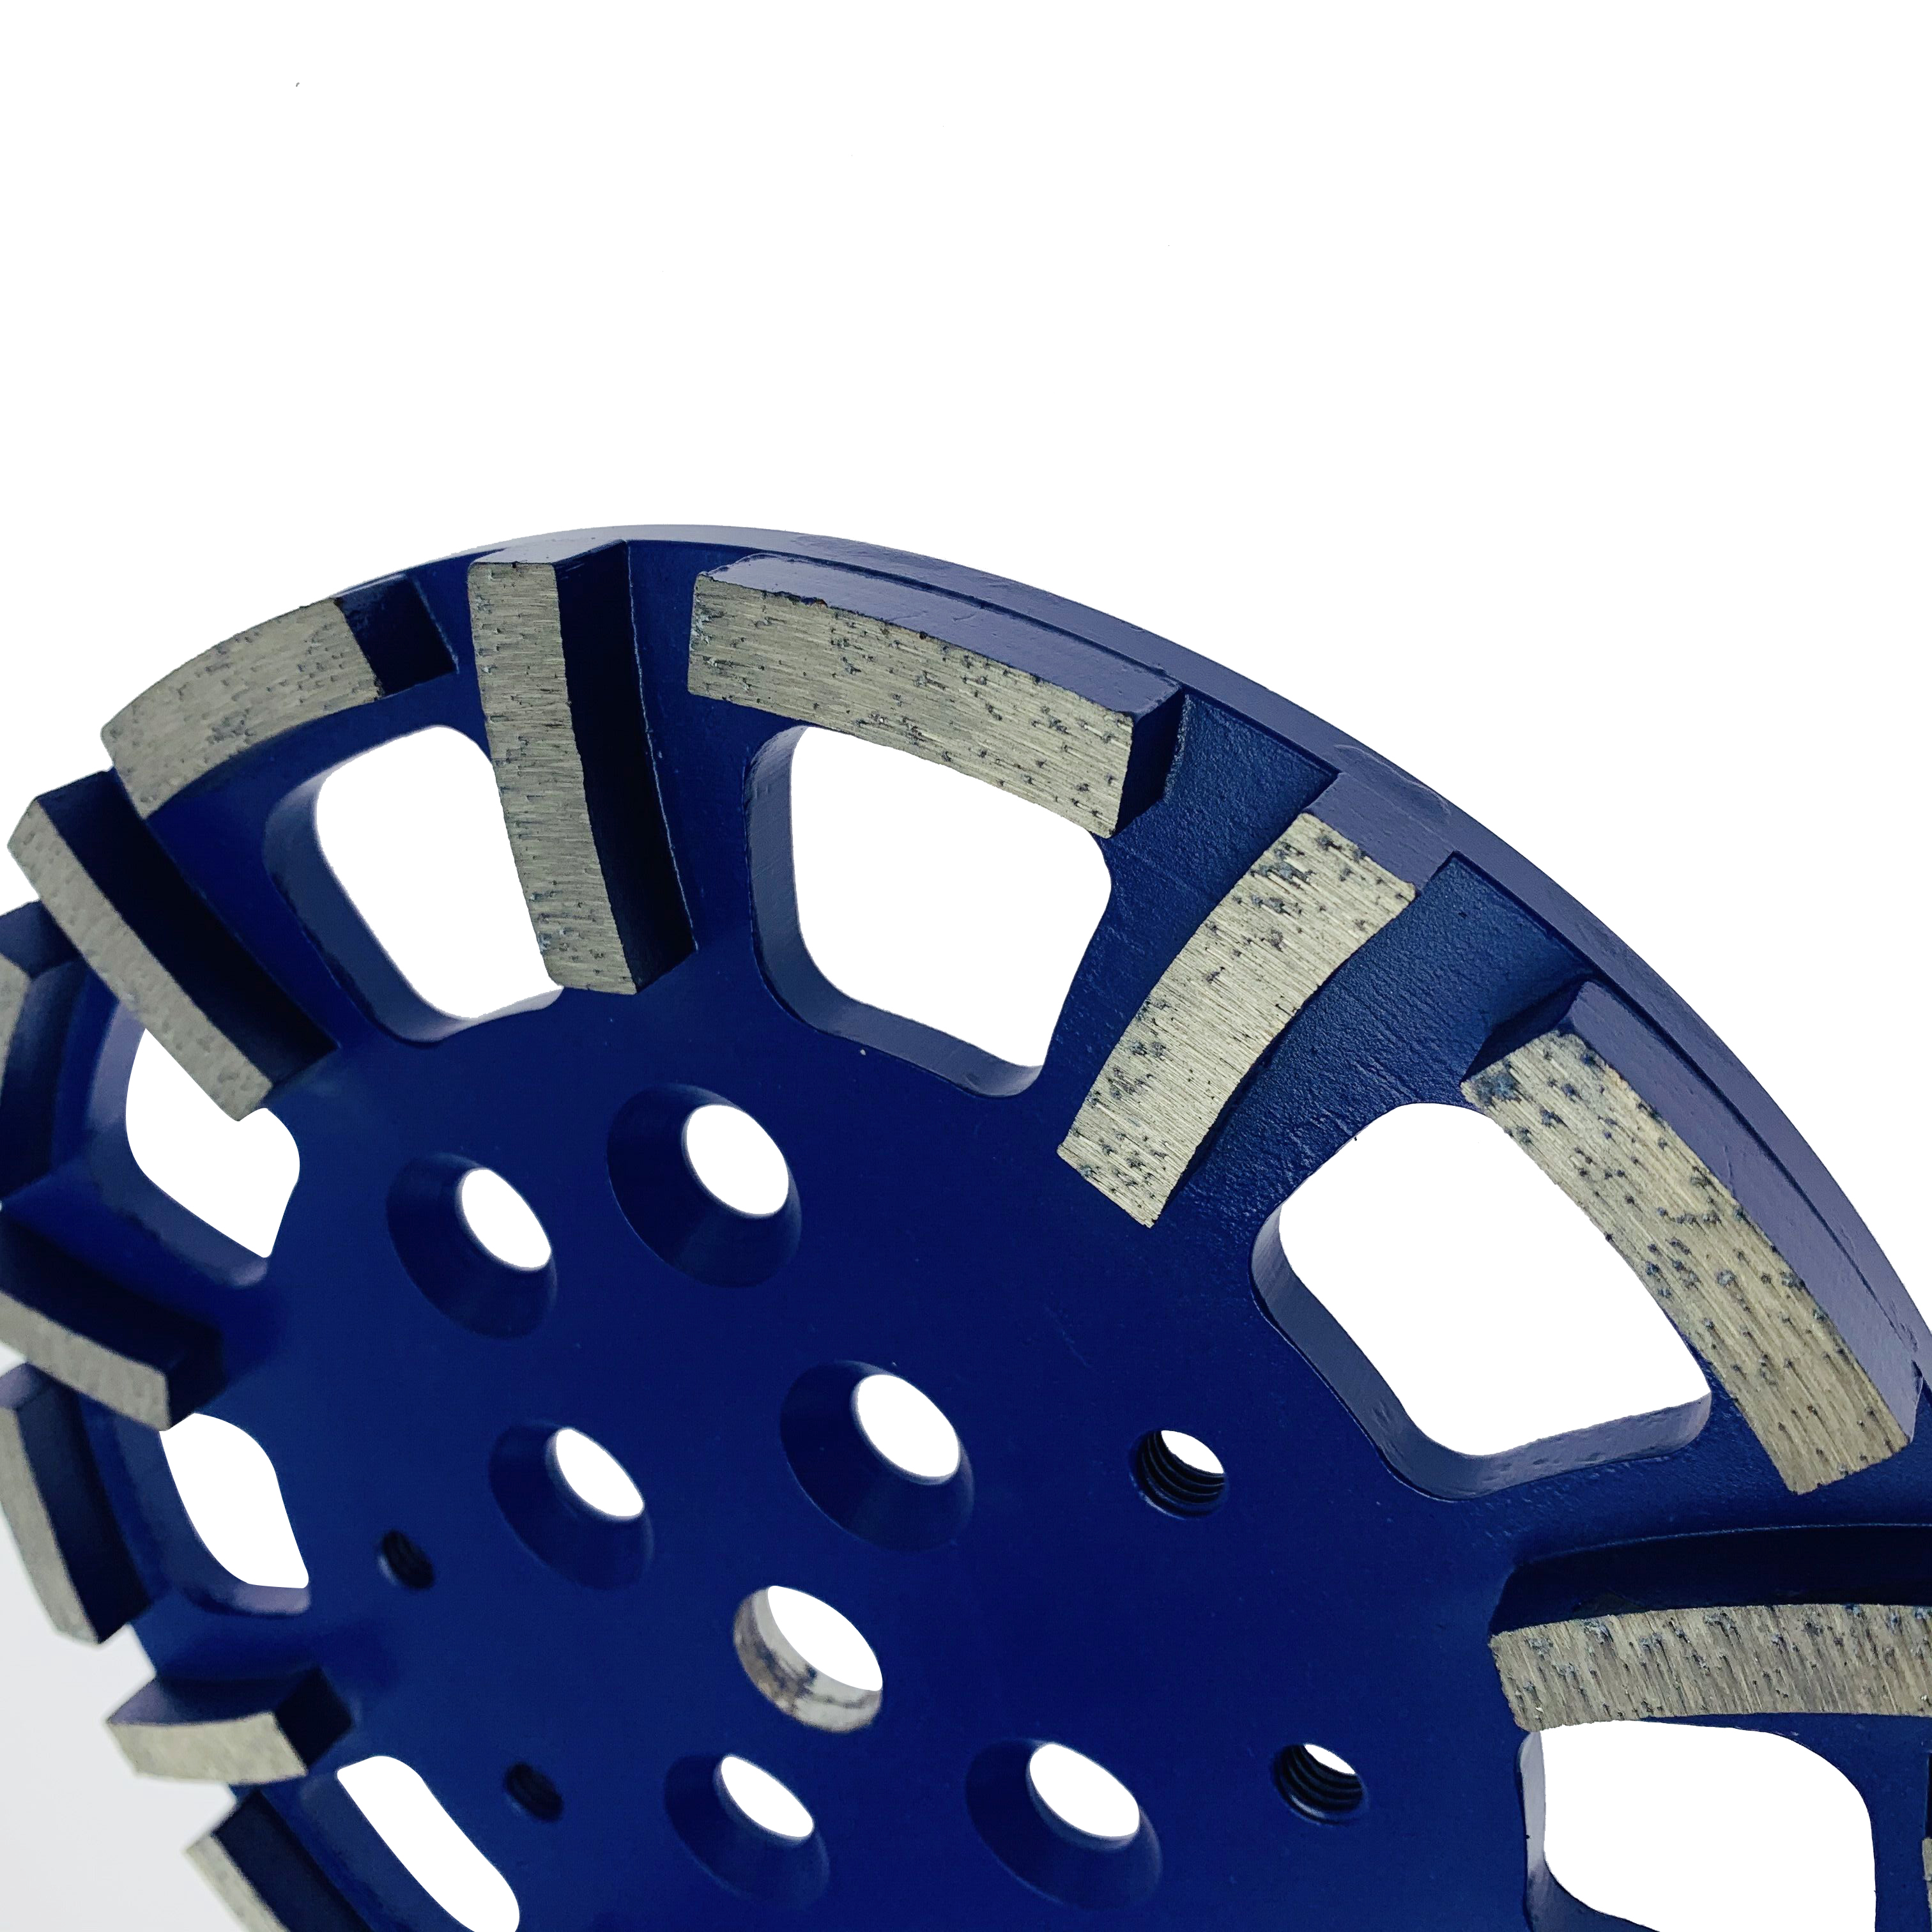 Disco abrasivo de rueda de diamante azul de 250 mm de afilado de 10 pulgadas soldado con plata de primera calidad para hormigón blando